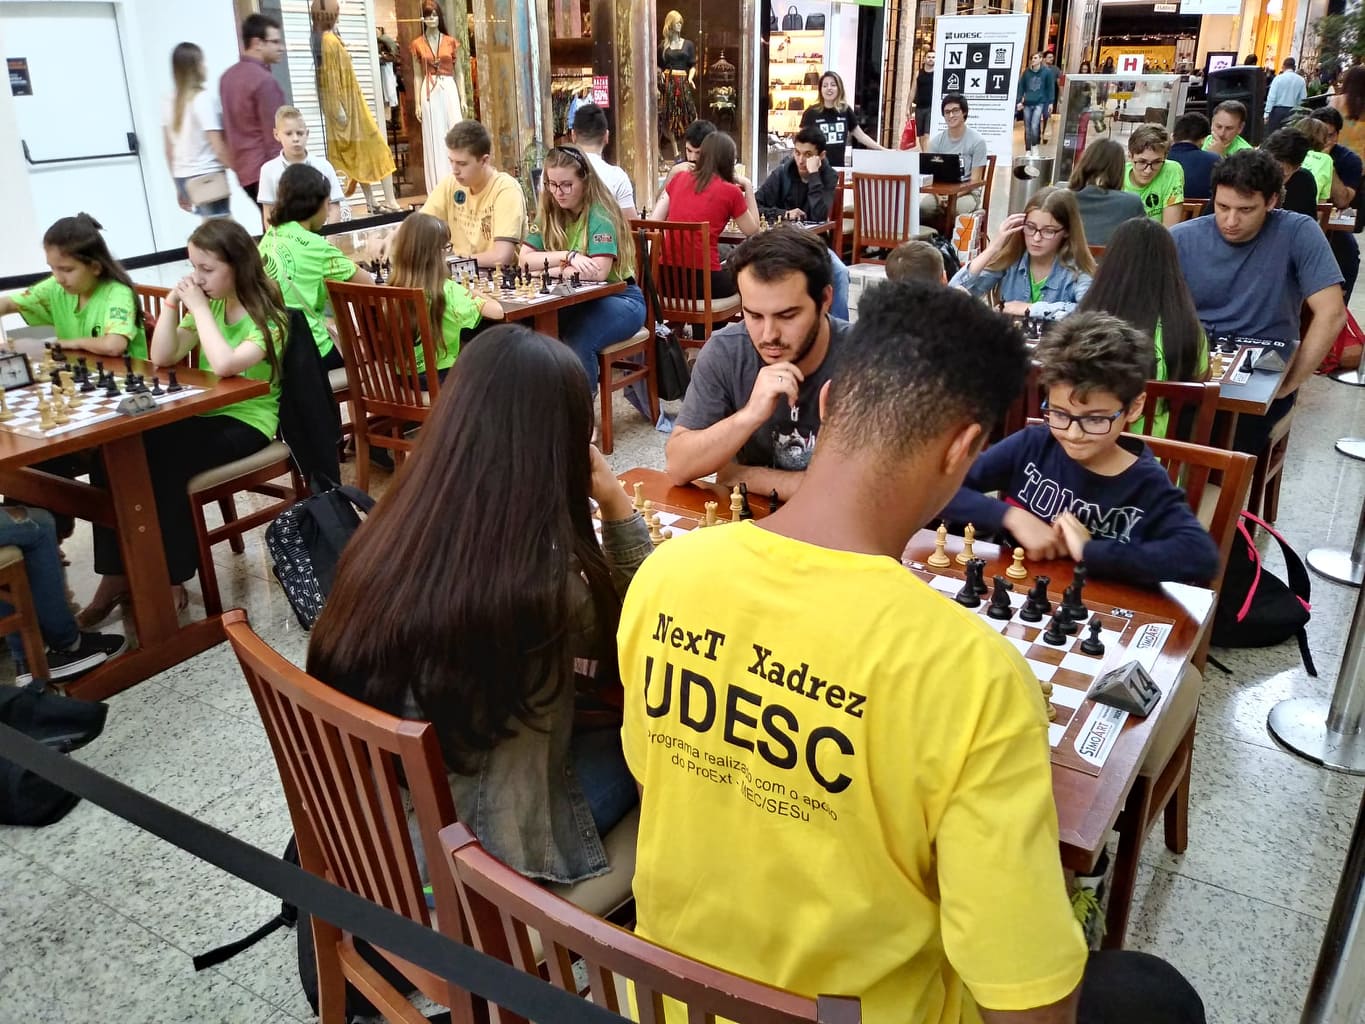 Cursos de xadrez gratuitos da Udesc Joinville estão com inscrições abertas